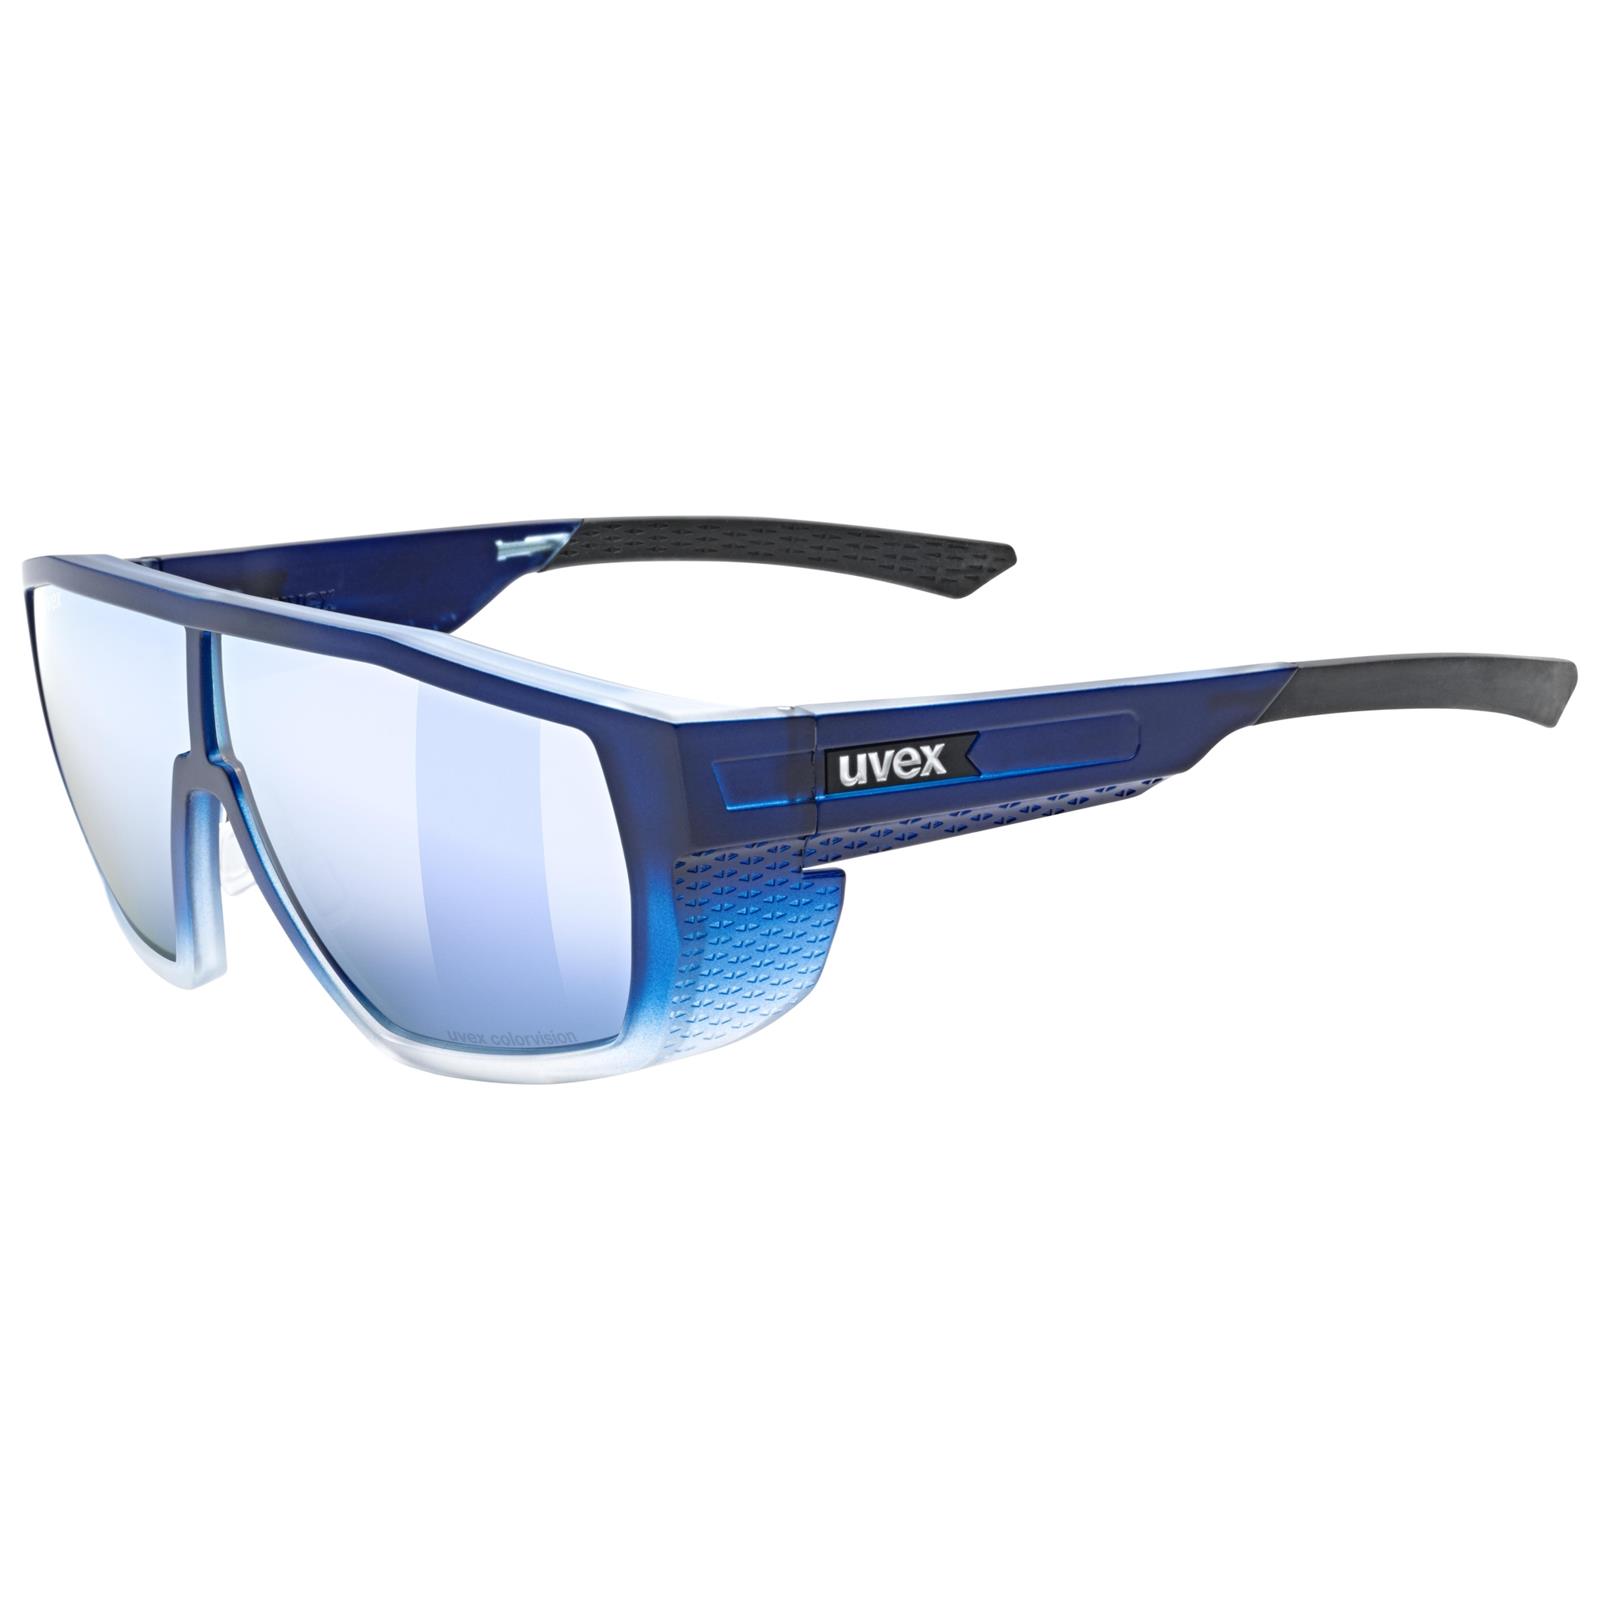 UVEX Mtn Style Cv Blue Matt Fa/mir.blue (s5330364480)